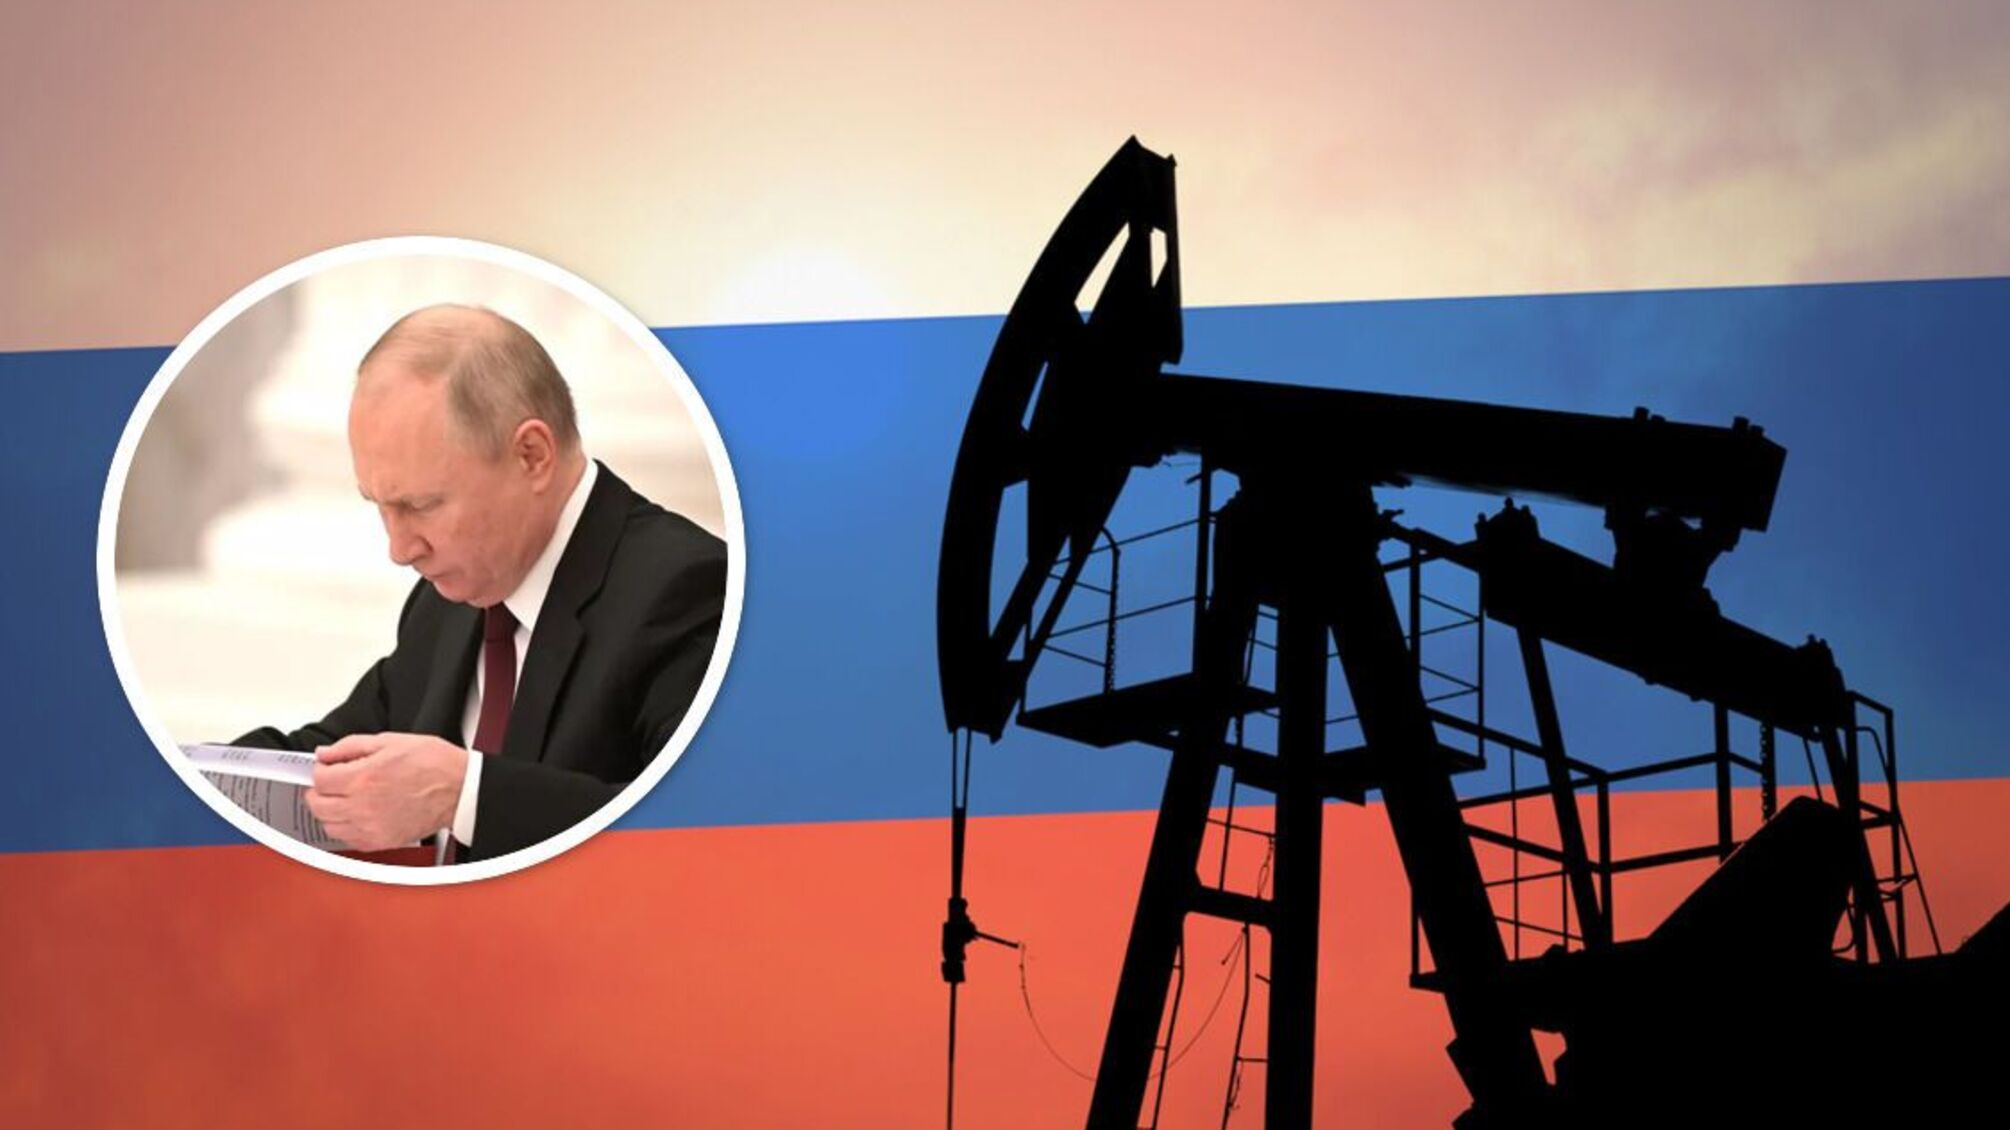 РФ 'наказывает' государства, присоединившиеся к ценовому эмбарго на нефть: детали указа путина